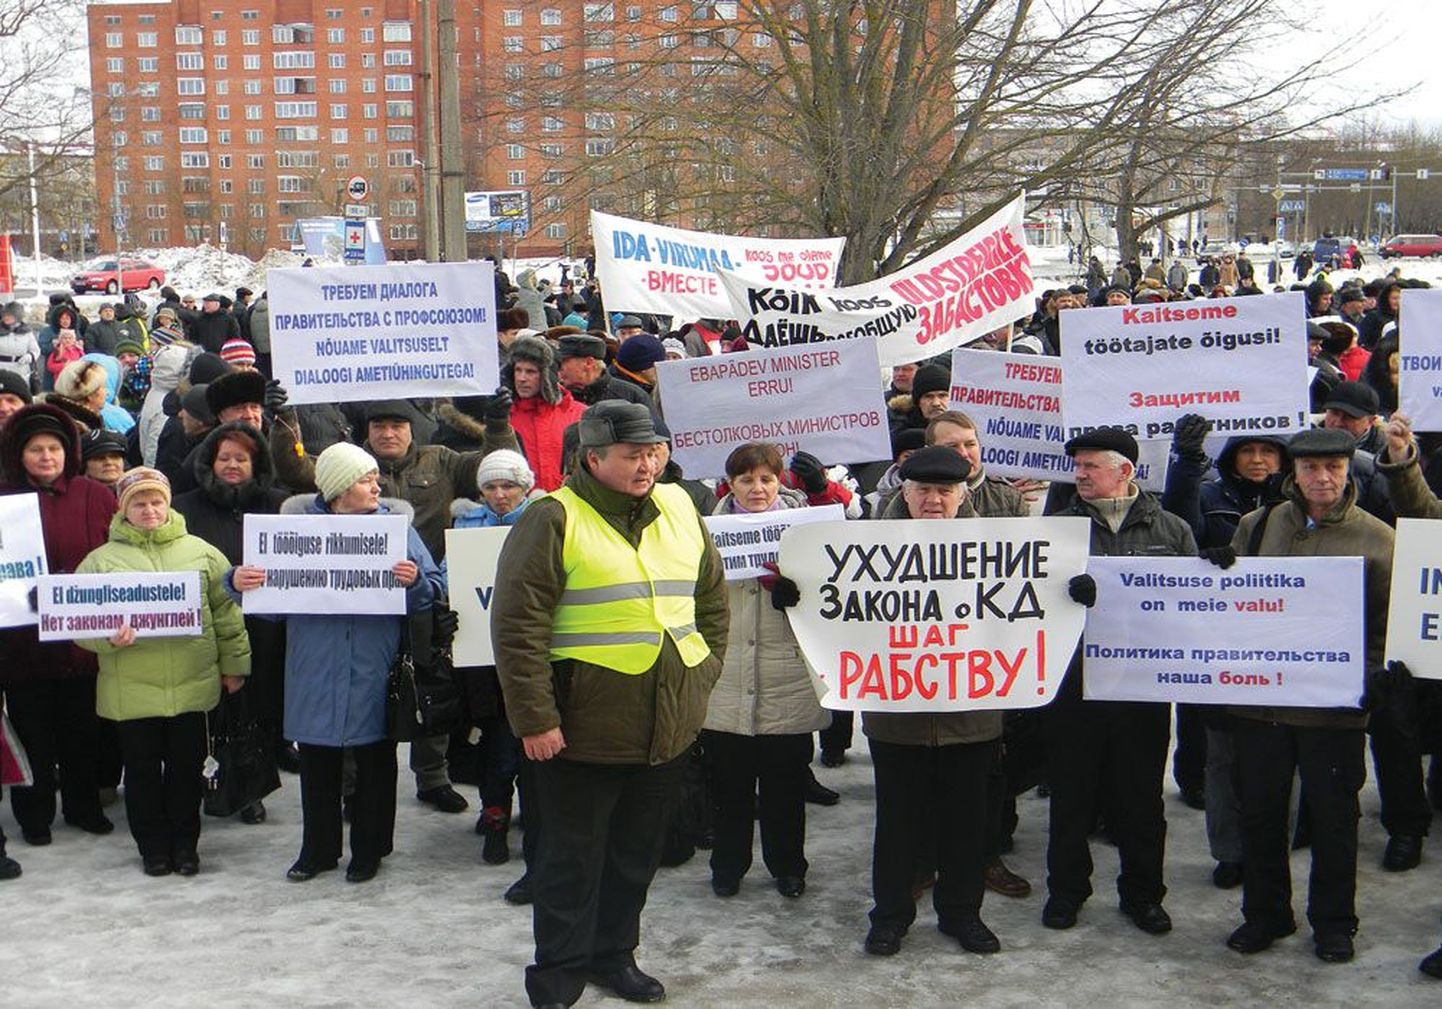 В марте 2012 года Центральный союз профсоюзов Эстонии инициировал по всей Эстонии митинги и забастовки. Эстонские энергетики и работники железной дороги теперь стремятся доказать свое право на забастовку в суде.